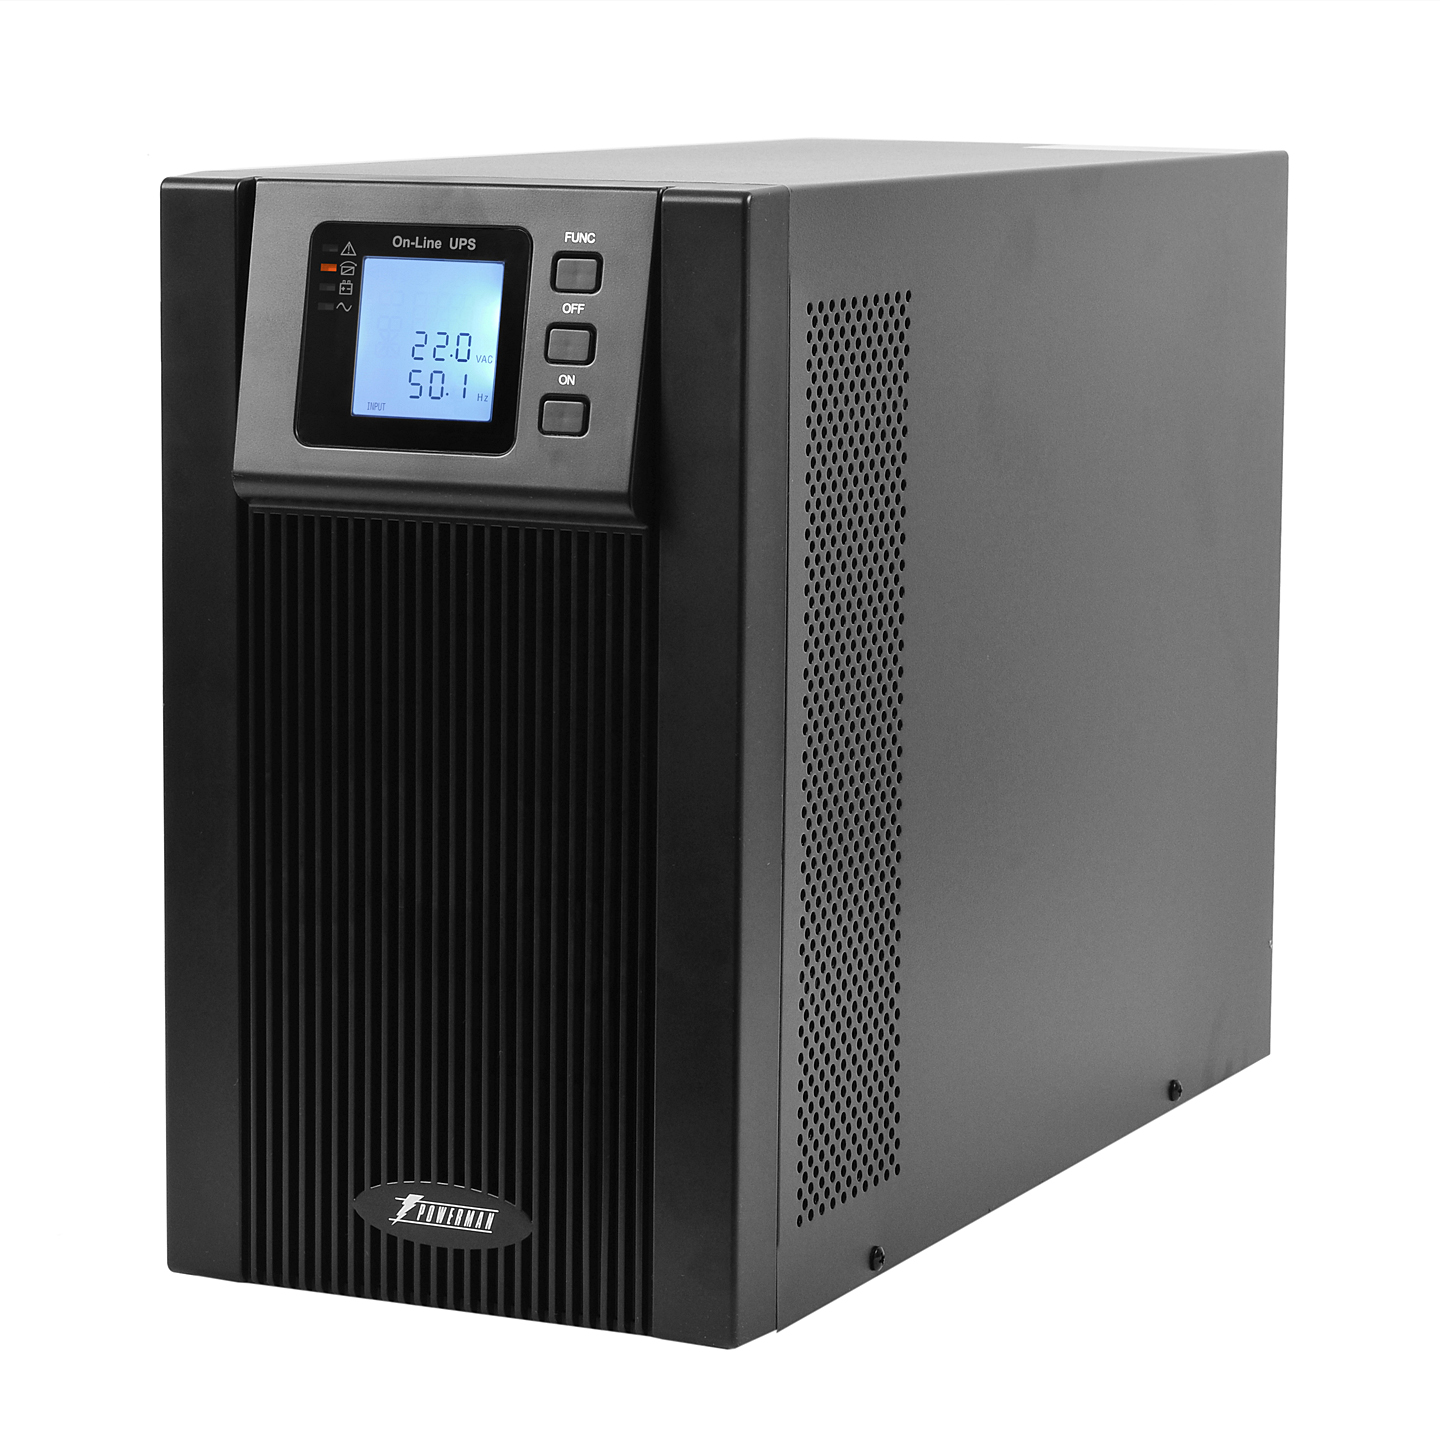 ИБП Powerman Online 2000I, 2000 В·А, 1.8 кВт, IEC, розеток - 8, USB, черный